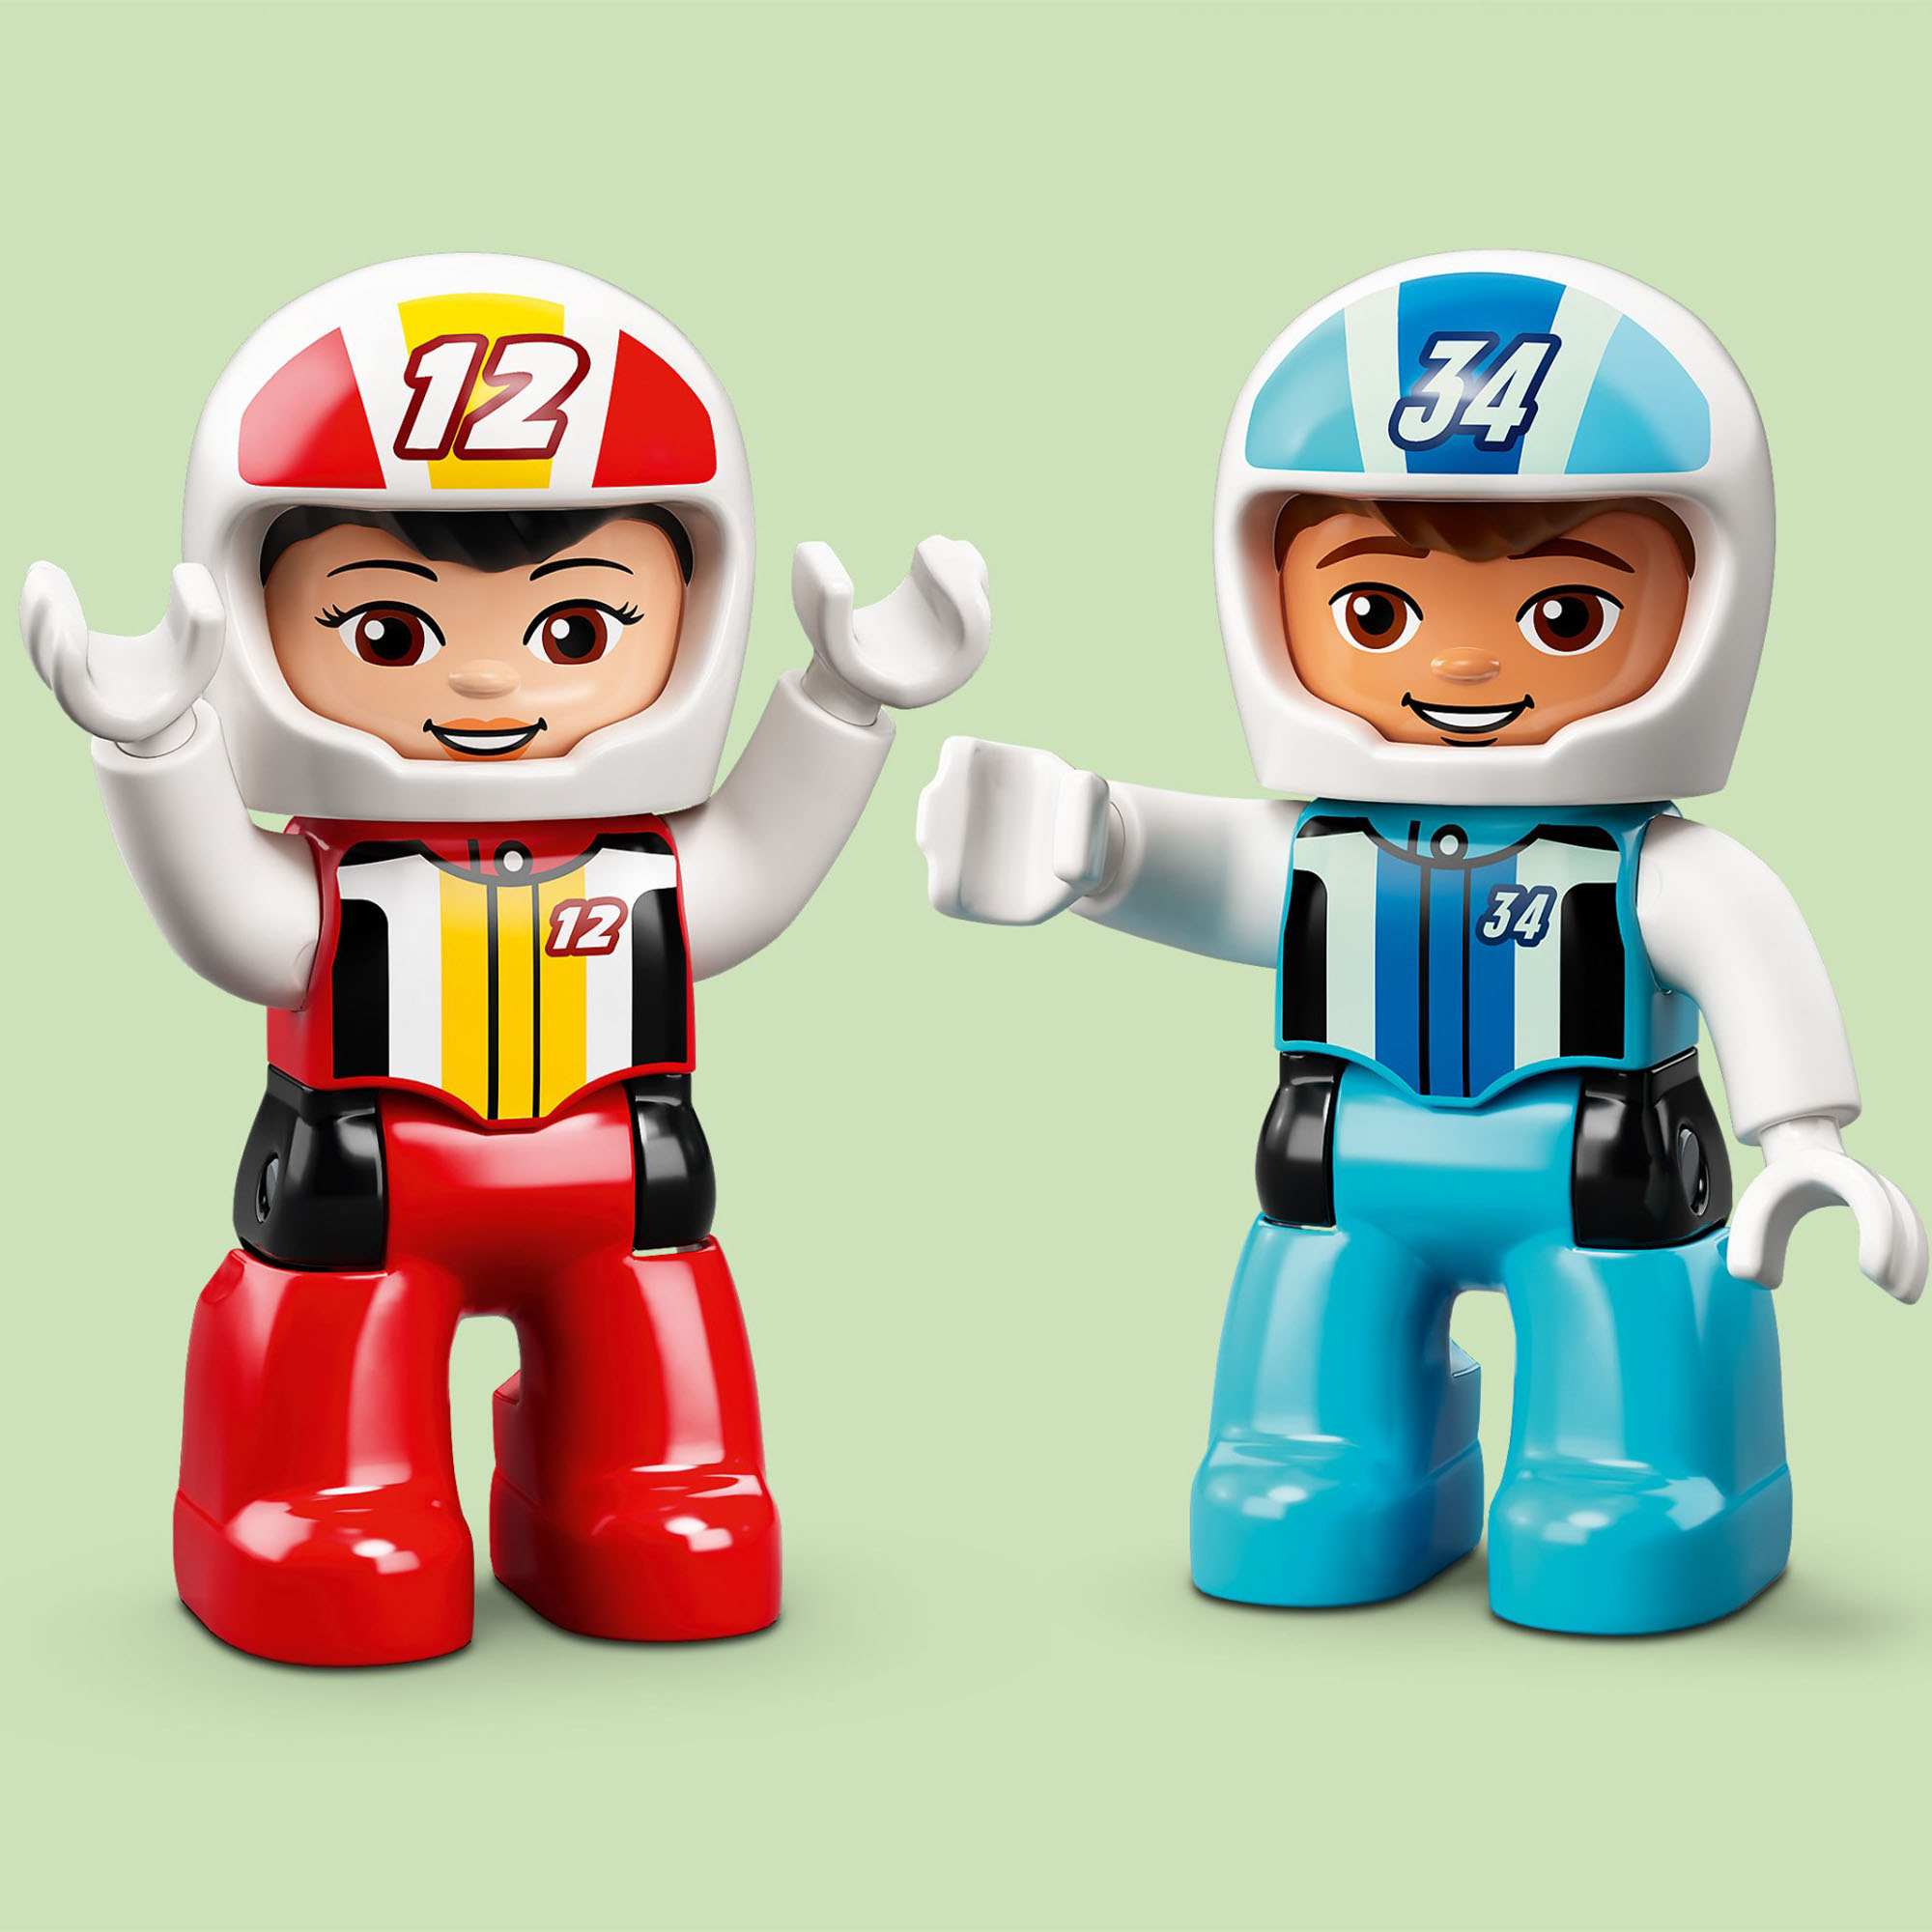 LEGO DUPLO Town Auto da Corsa, Set Macchine Giocattolo per Bambini di 2 Anni con 10947, , large